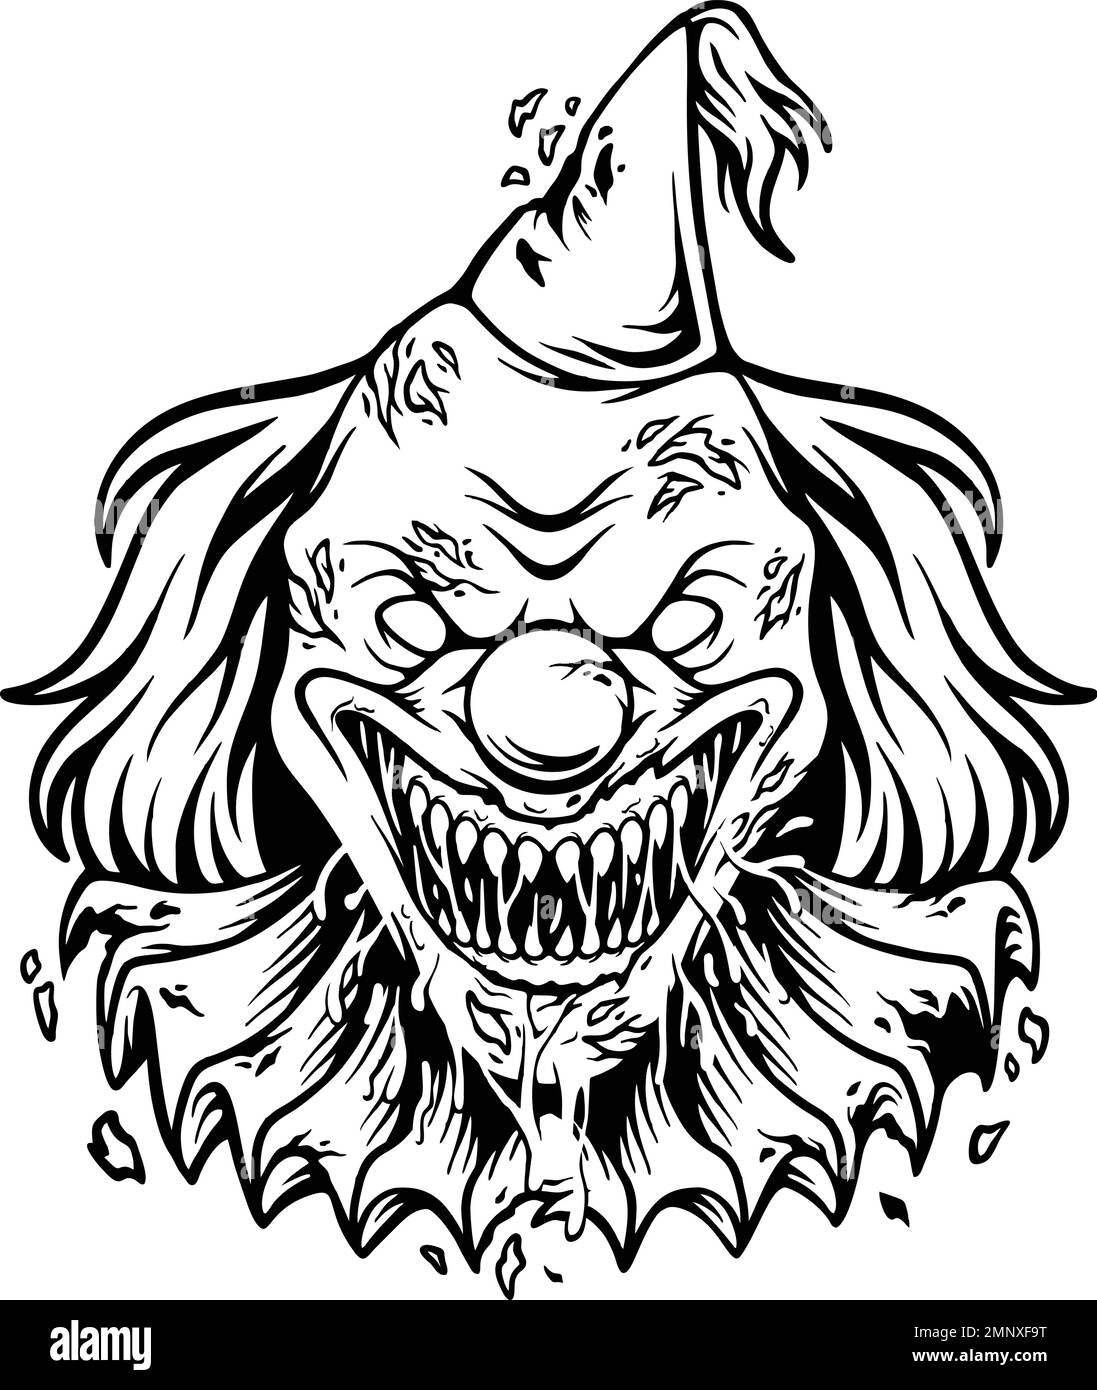 Smyky mal clown tête de dessin animé logo silhouette illustrations vectorielles pour votre logo de travail, t-shirt de marchandise, autocollants et dessins d'étiquettes, affiche Illustration de Vecteur